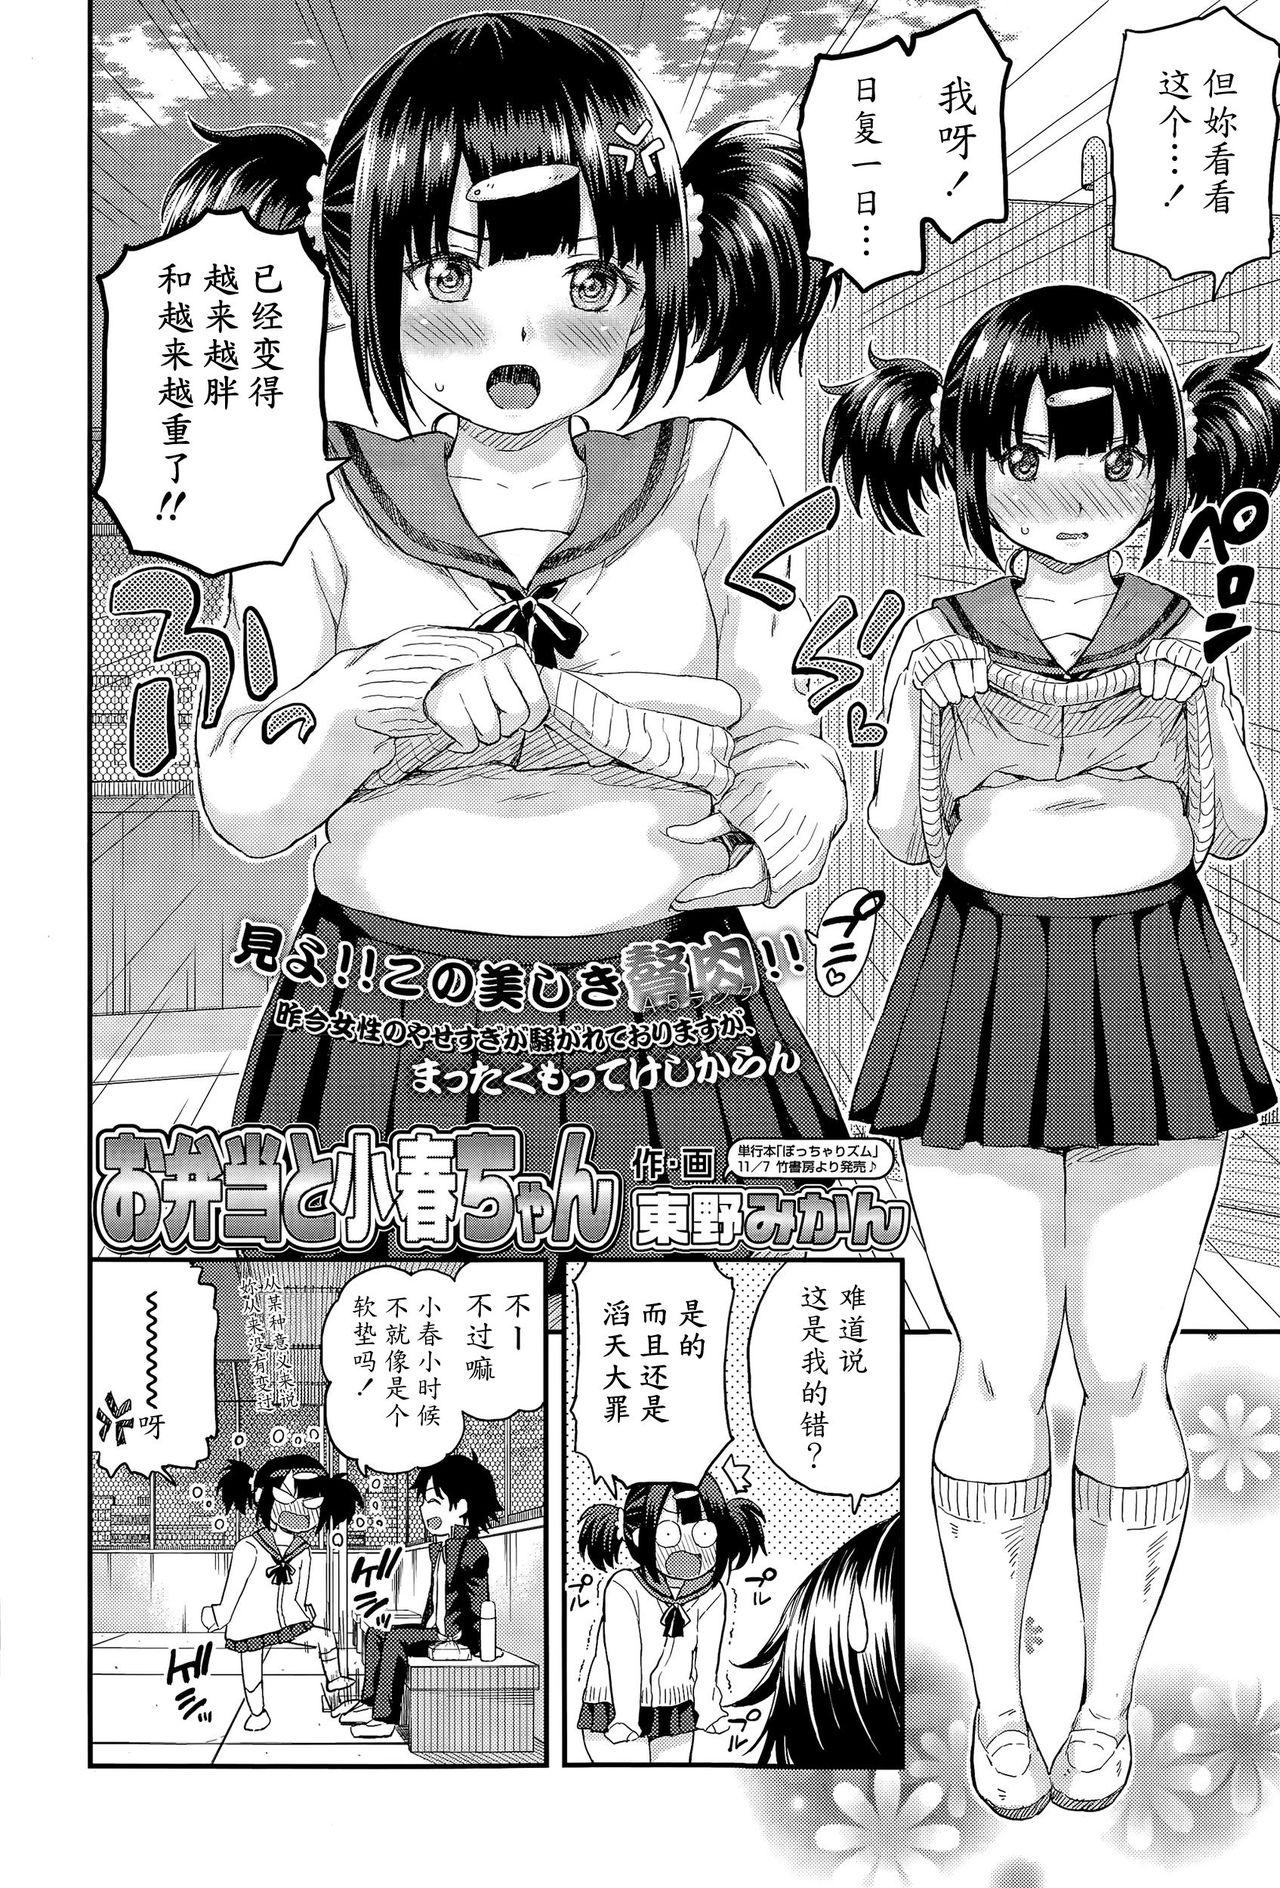 Bdsm Obentou to Koharu-chan Menage - Page 2